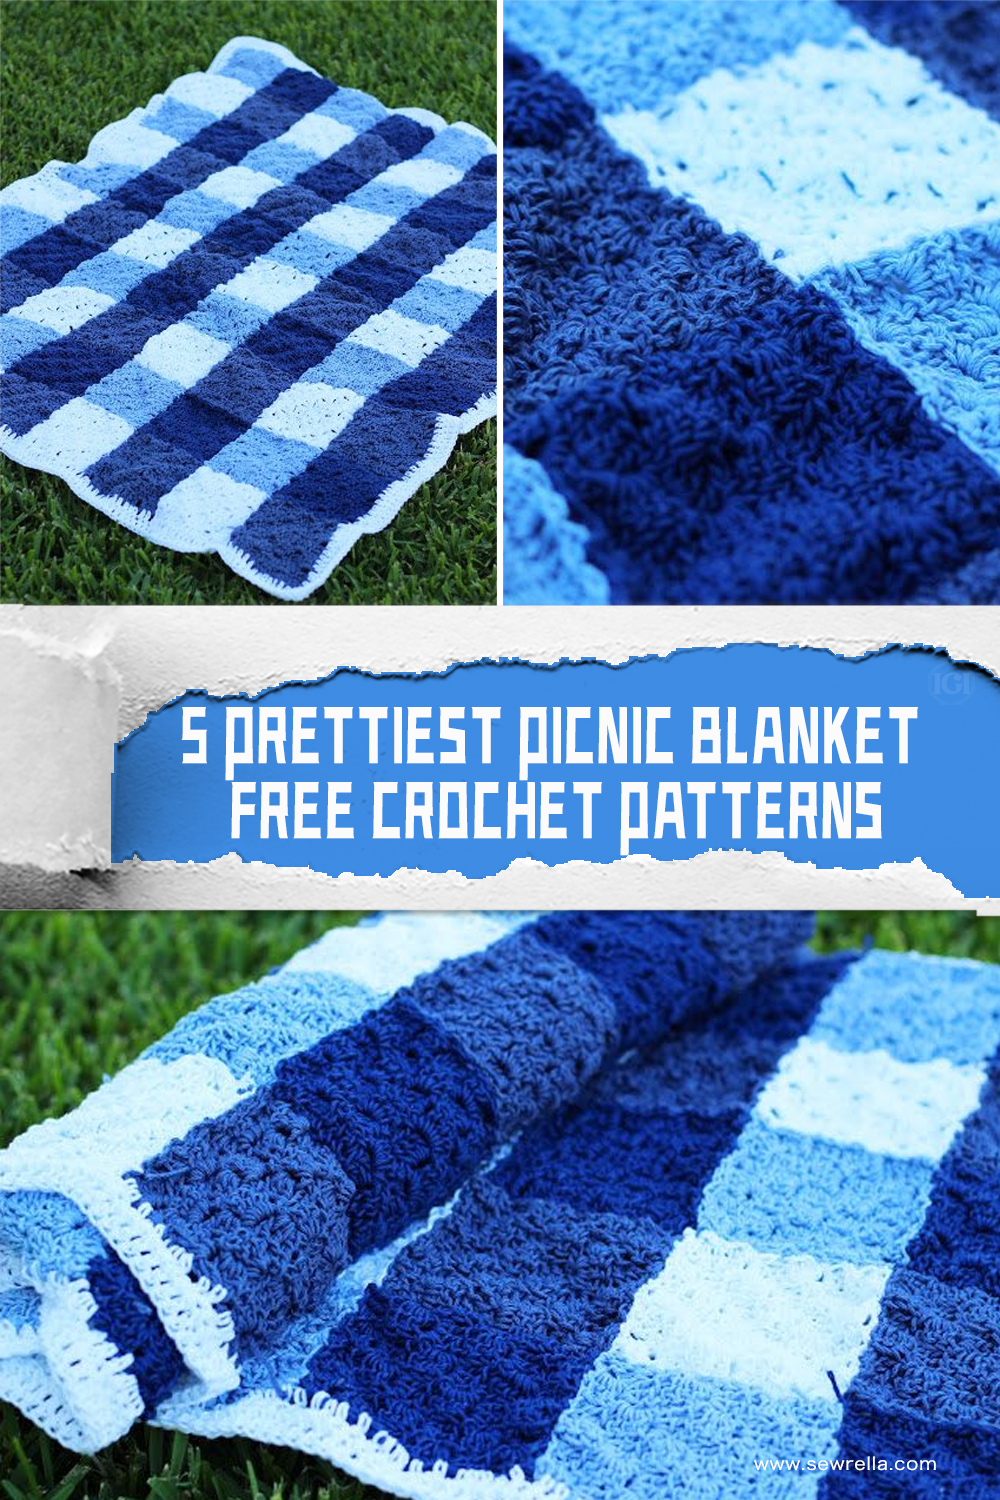 5 FREE Prettiest Crochet Picnic Blanket Patterns